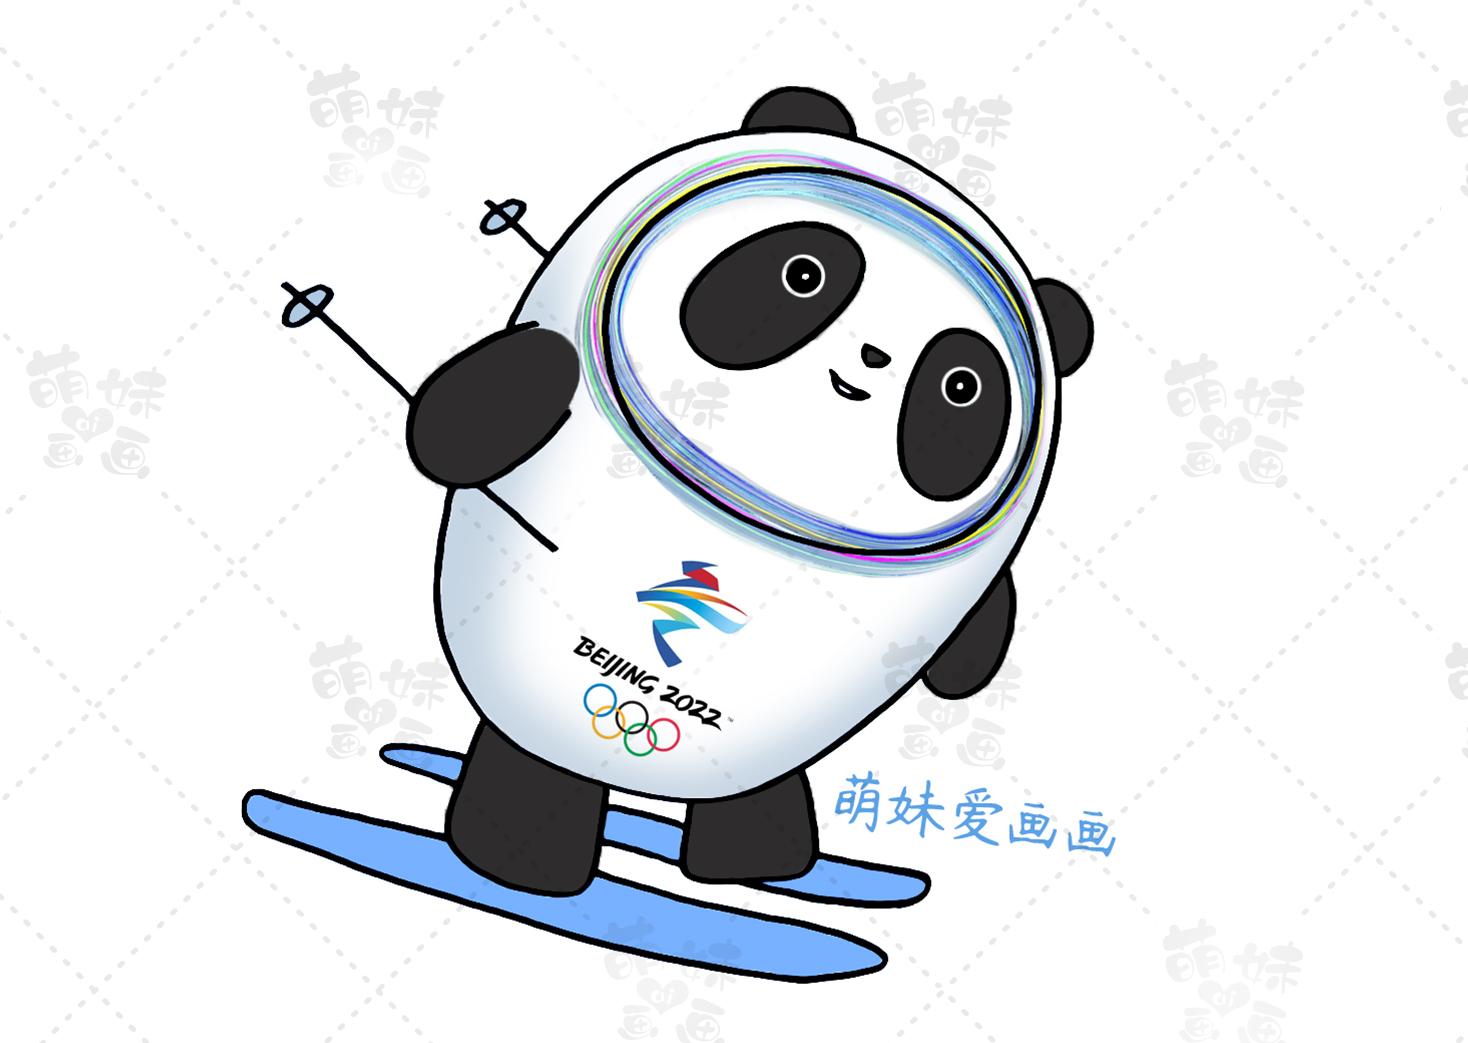 花样滑冰简笔画六,短道速滑简笔画七,单板滑雪简笔画儿童2022北京冬奥